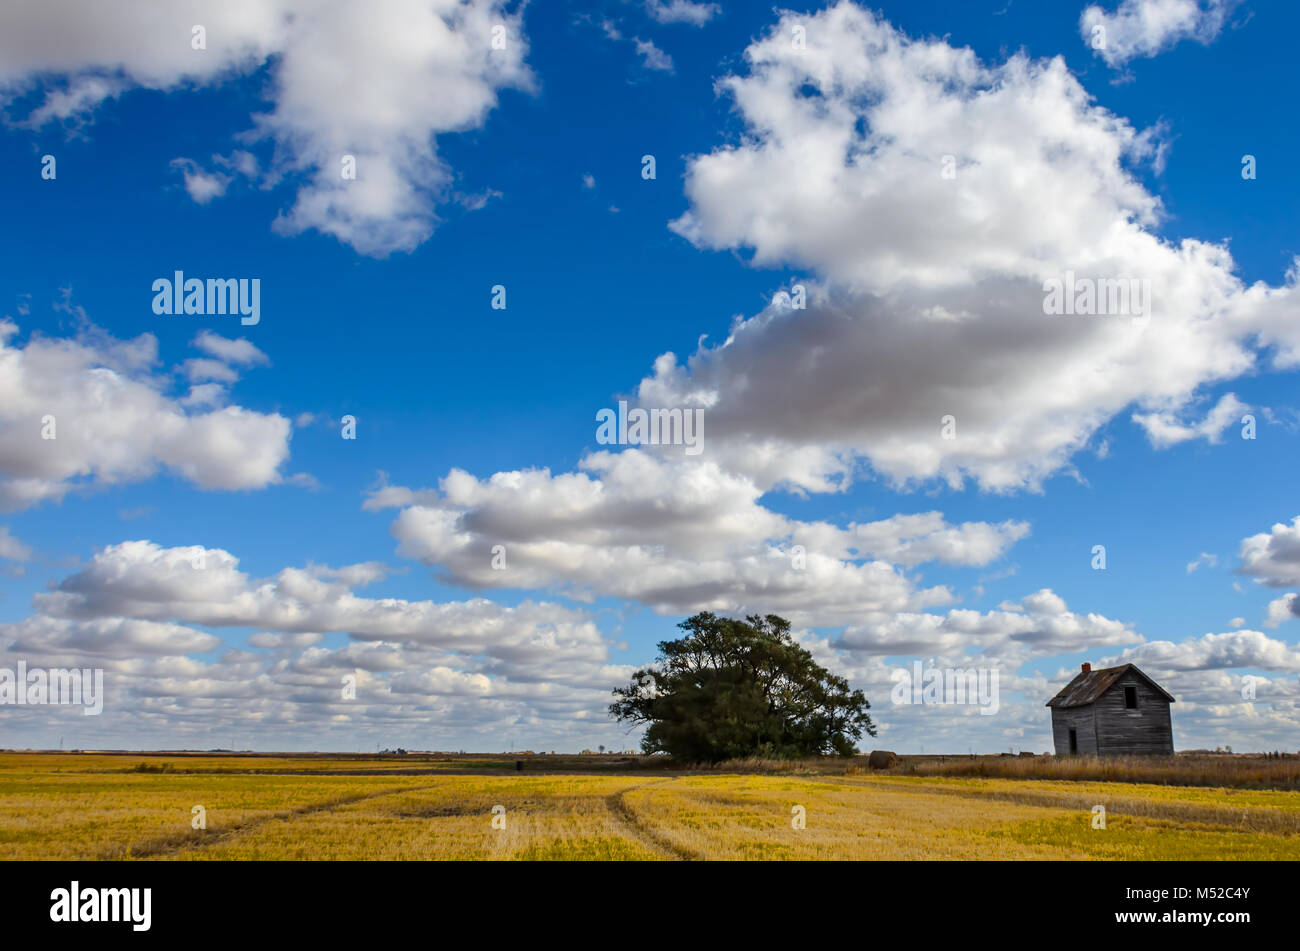 Üppige, cumulus Wolken gegen den blauen Himmel über einem gelben abgeschrägten Bereich mit einem grünen Baum, Heuhaufen und ein altes Haus an einem klaren Sommertag Stockfoto